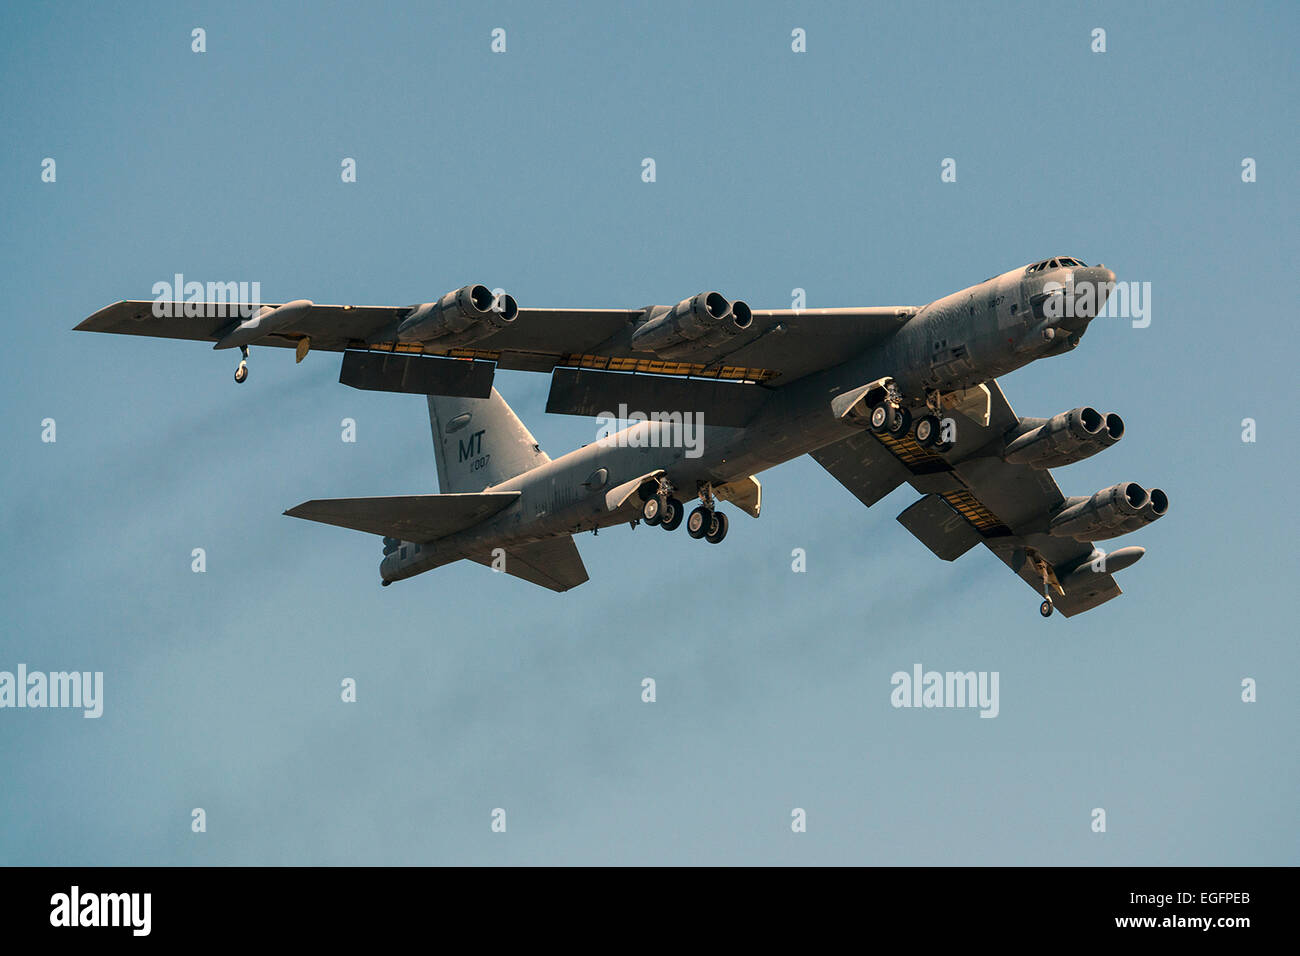 Un B-52H Stratofortress bombardero estratégico despega tras haber sido sacado del almacenamiento a largo plazo de Febrero 13, 2015 en Davis-Monthan Air Force Base, Arizona. El avión fue retirado de servicio en 2008 y ha pasado los últimos siete años sentados en el Boneyard", pero fue seleccionada para ser devuelto al estado activo y llegará a reincorporarse a la flota de B-52. Foto de stock